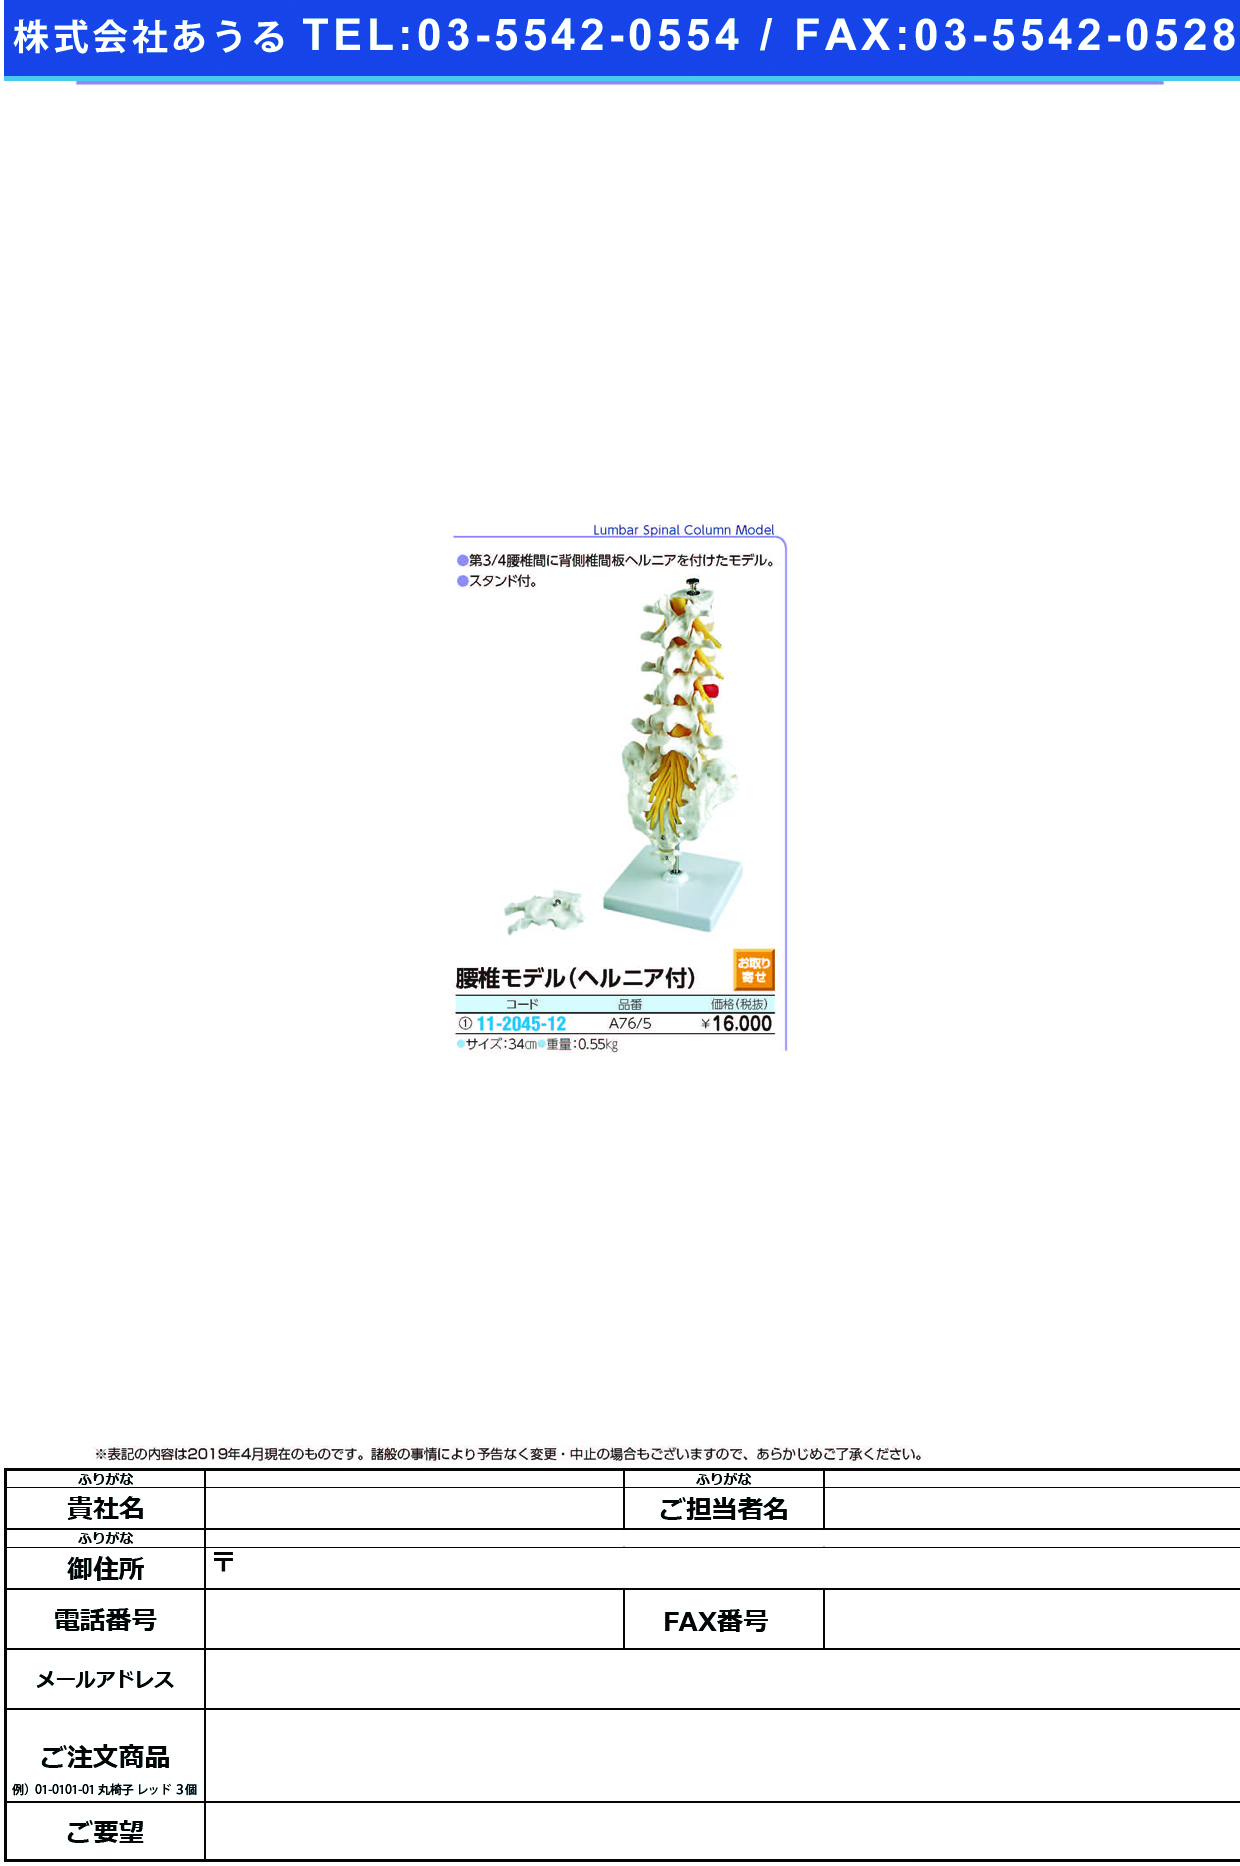 (11-2045-12)腰椎モデルヘルニア付（スタンド付） A76/5(34CM) ﾖｳﾂｲﾓﾃﾞﾙ(京都科学)【1台単位】【2019年カタログ商品】